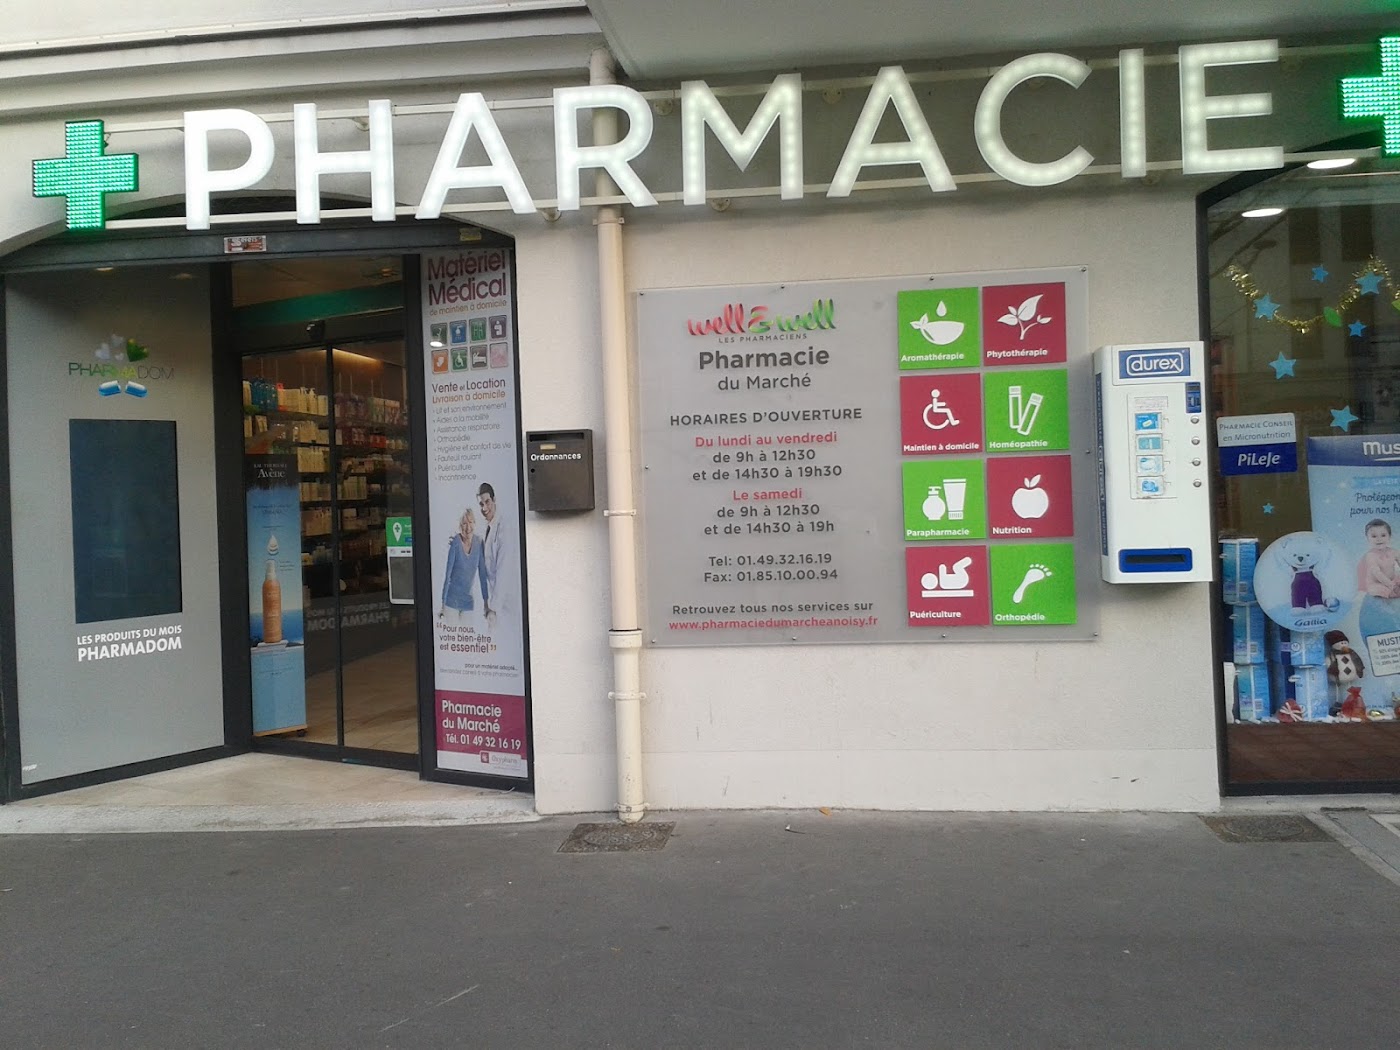 Pharmacie du Marché well&well